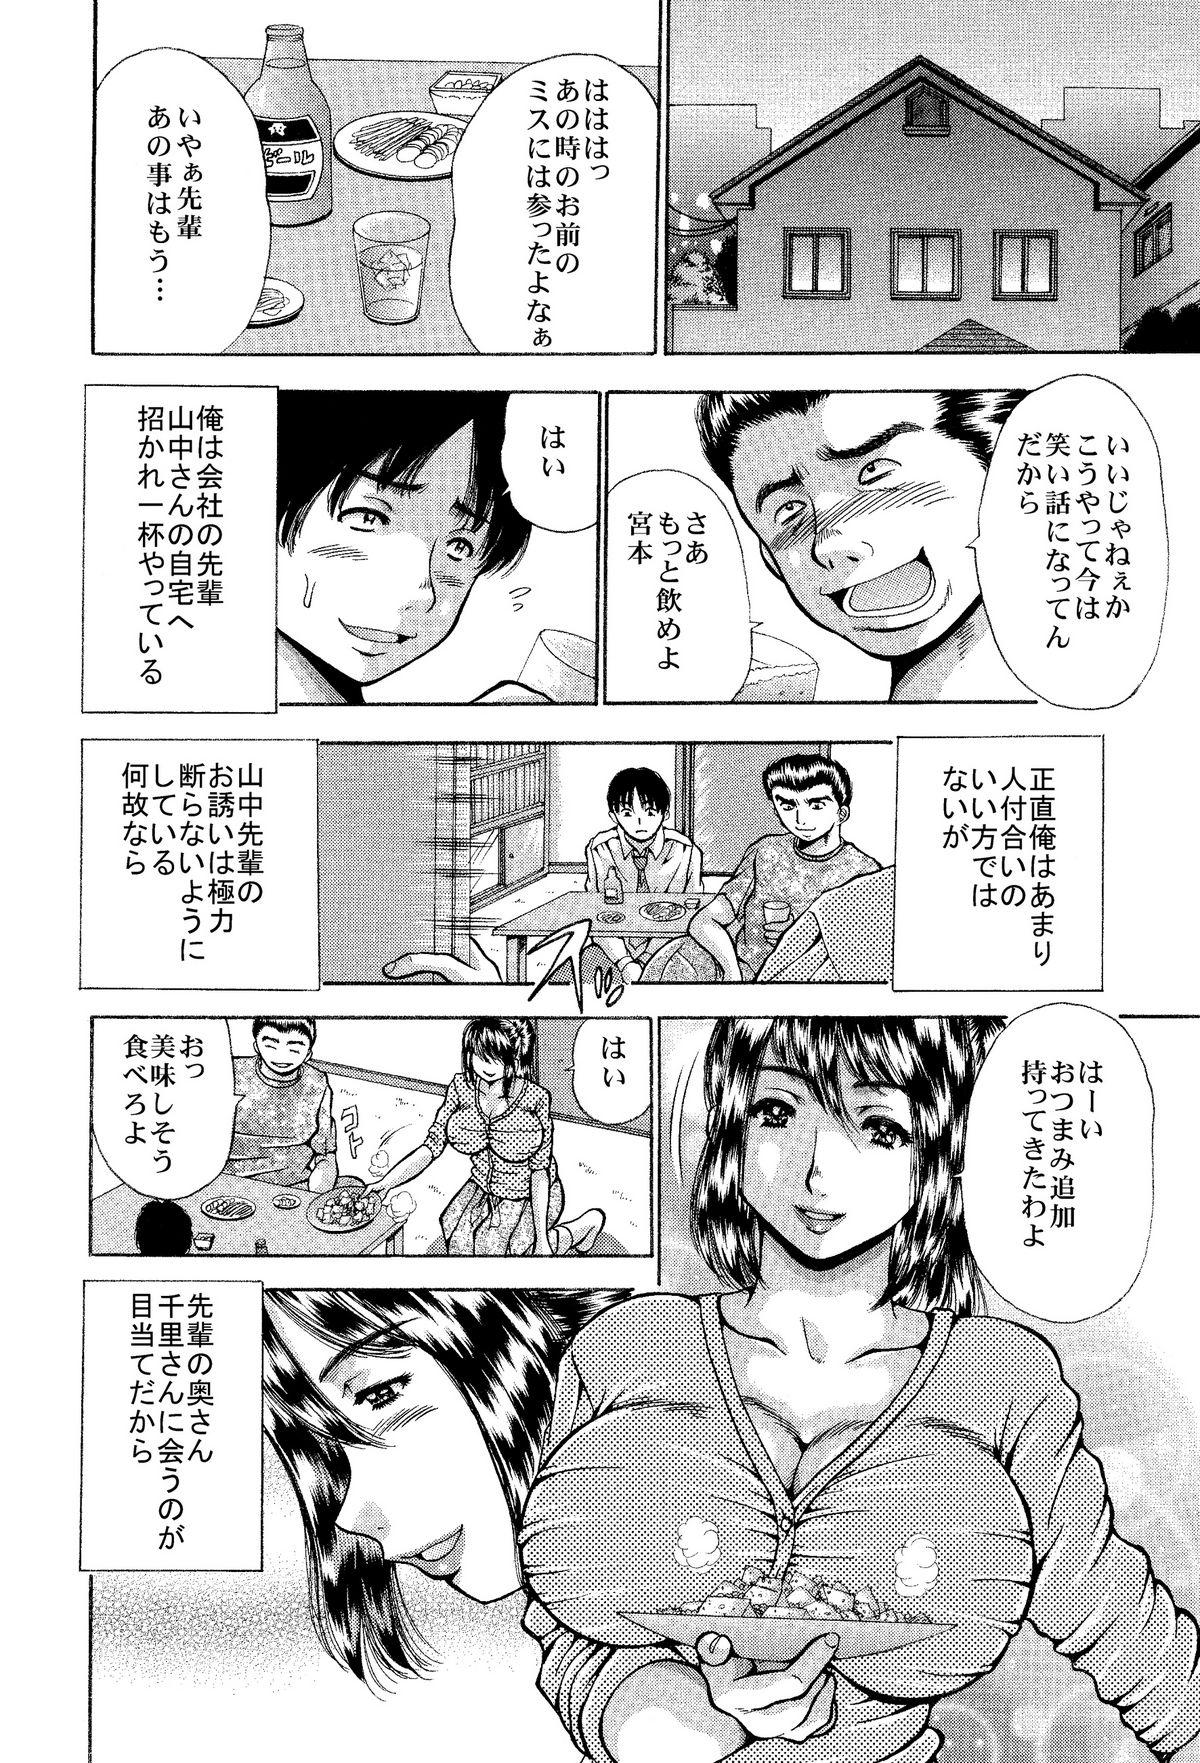 Itai Oku-san Manga o Atsumetemita 46